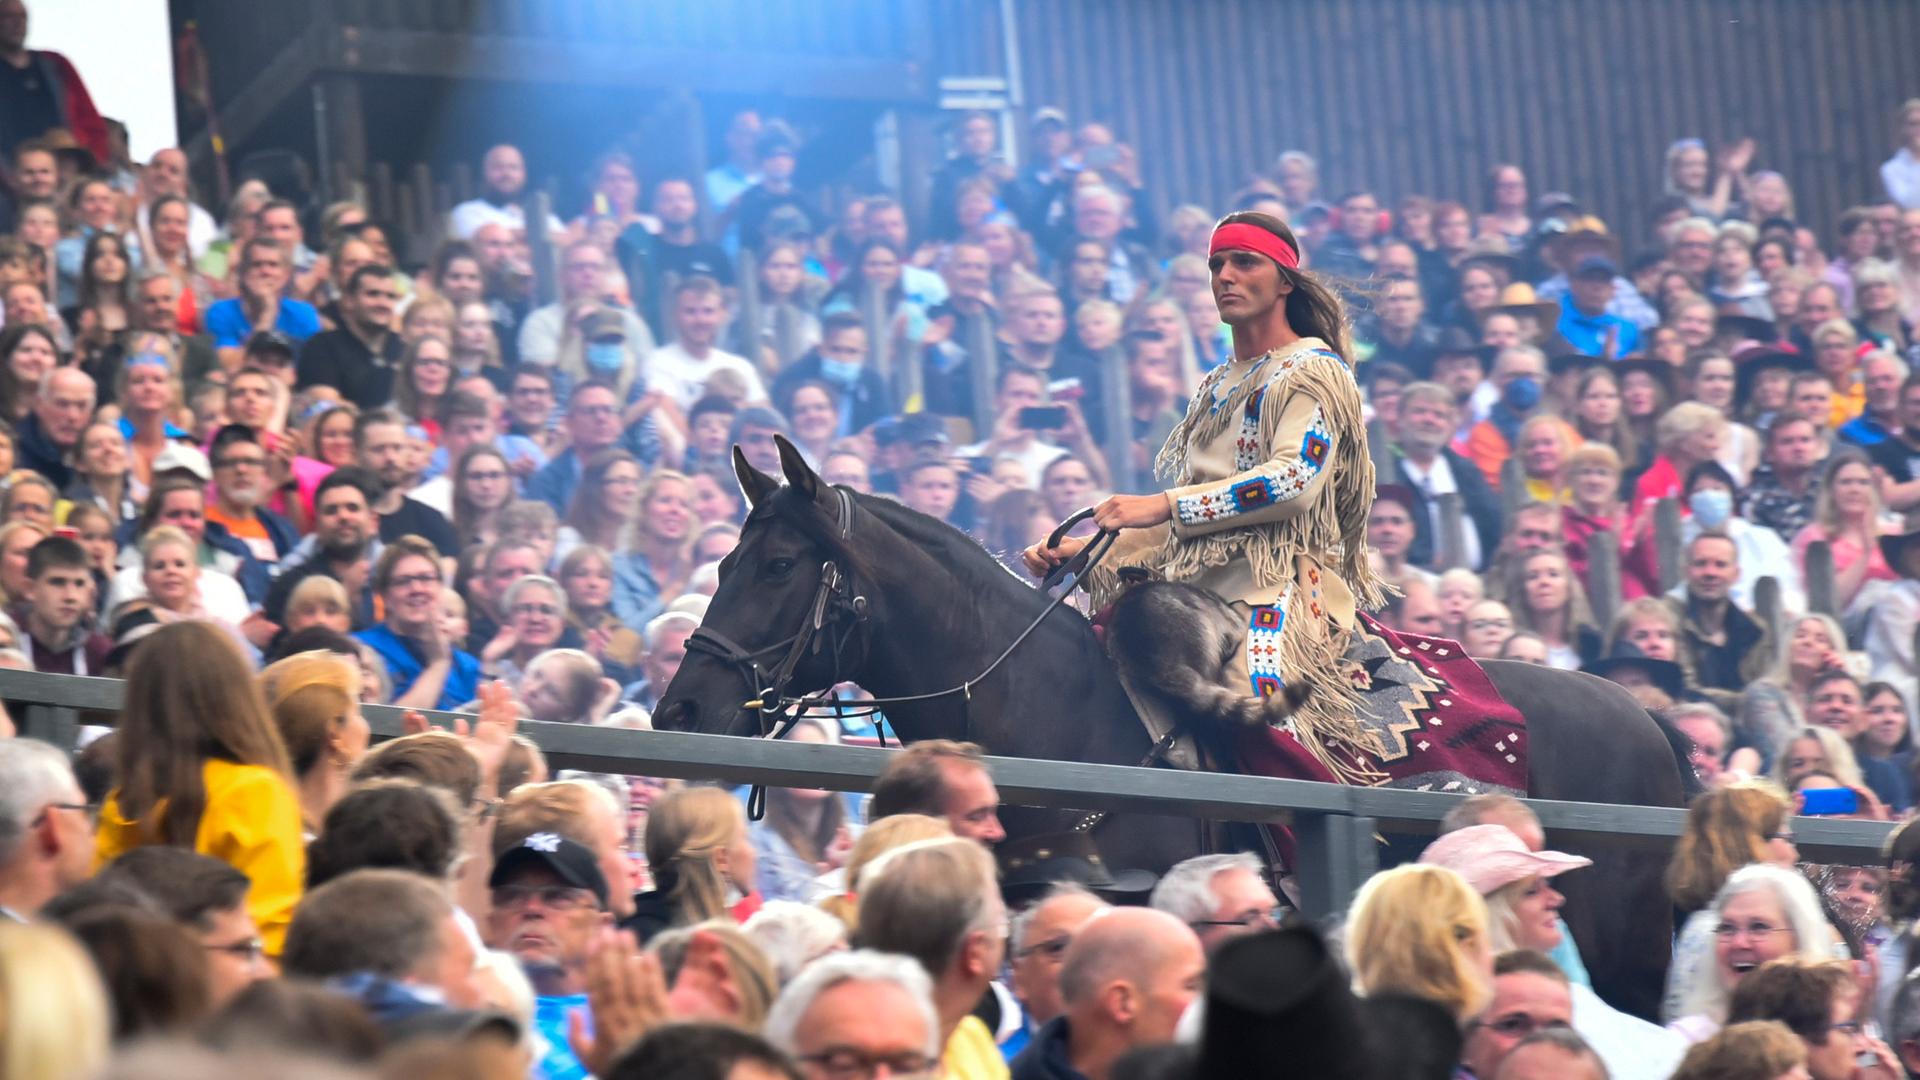 Ein Mann auf einen Pferd mit Federschmuck reitet durch eine Menschenmenge: Aufführung von "Der Ölprinz" bei den Karl May Spielen 2022 in Bad Segeberg.